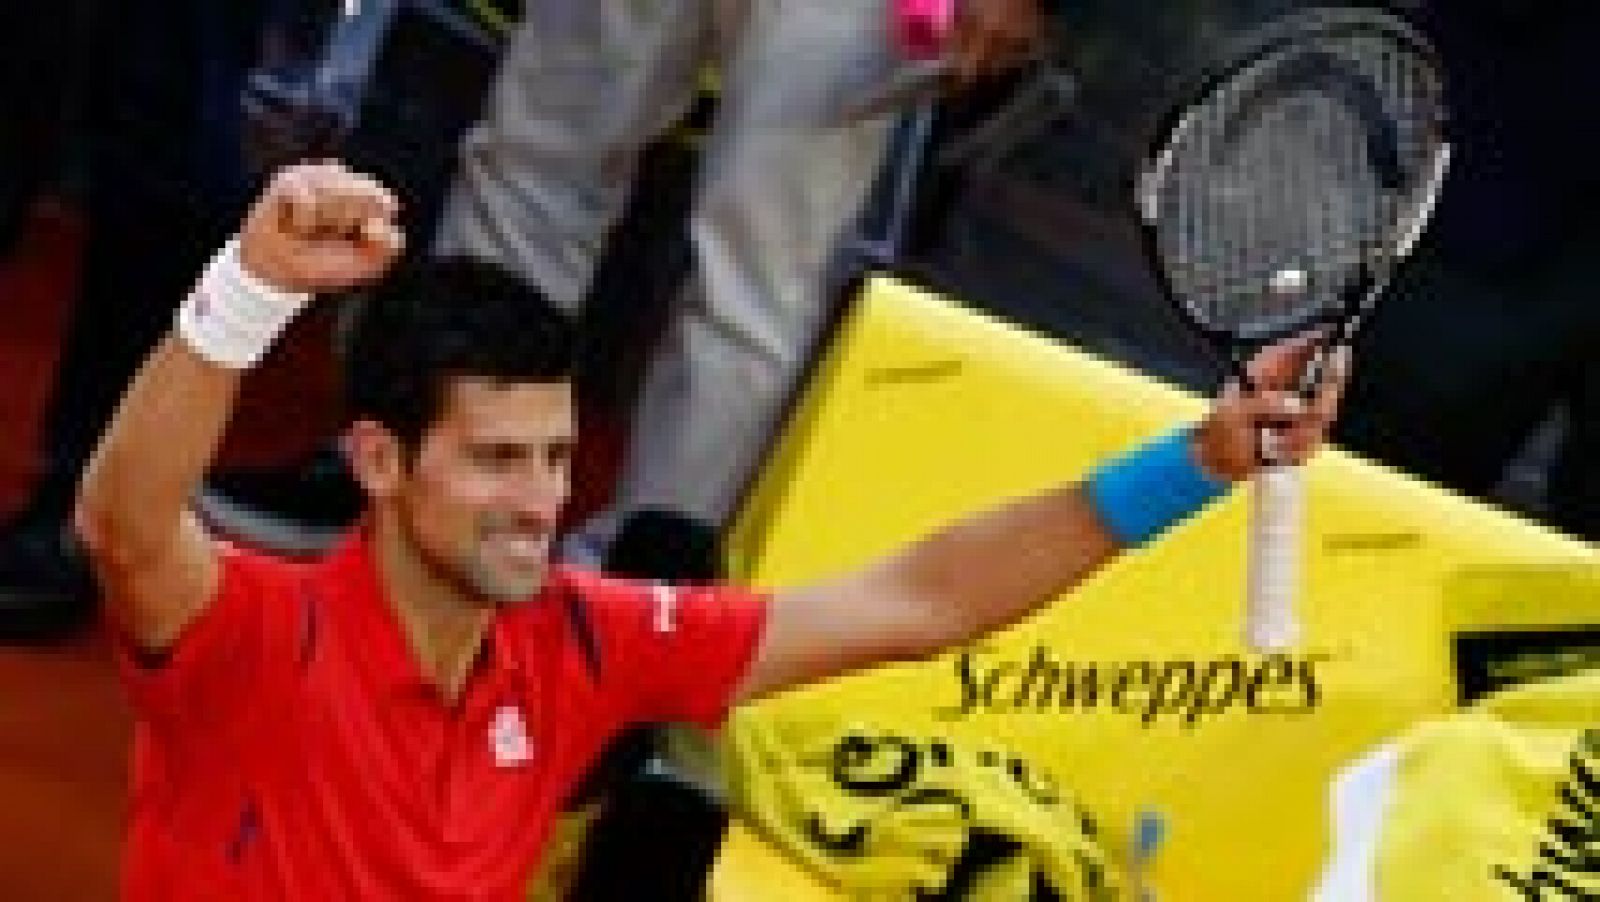 El nmero uno del mundo, Novak Djokovic, ha destronado al britnico Andy Murray como 'rey' del Mutua Madrid Open tras vencerle en la final en tres sets, por 6-2, 3-6 y 6-3 en dos horas de partido. 'Nole' ha conseguido el Masters 1000 nmero 29 en su carrera deportiva y su ttulo 64 de la ATP. Para llevarse el partido, 'Nole' tuvo que salvar siete bolas de break, en un juego final que dur 13 minutos.